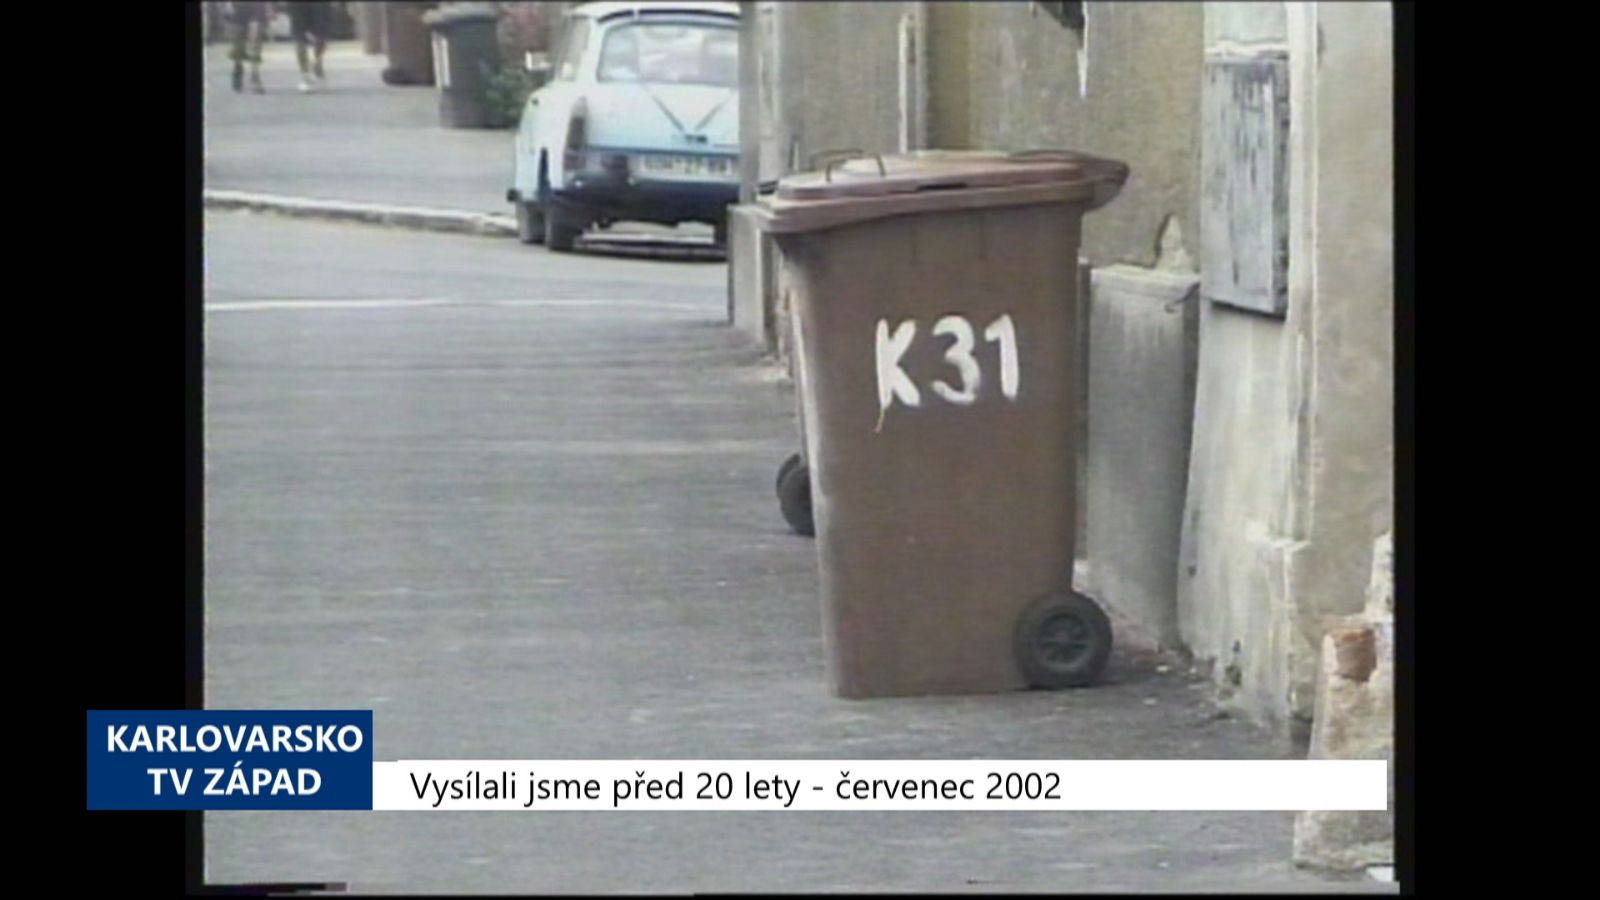 2002 – Cheb: Poplatek za odpady zaplatily jen dvě třetiny obyvatel (TV Západ)